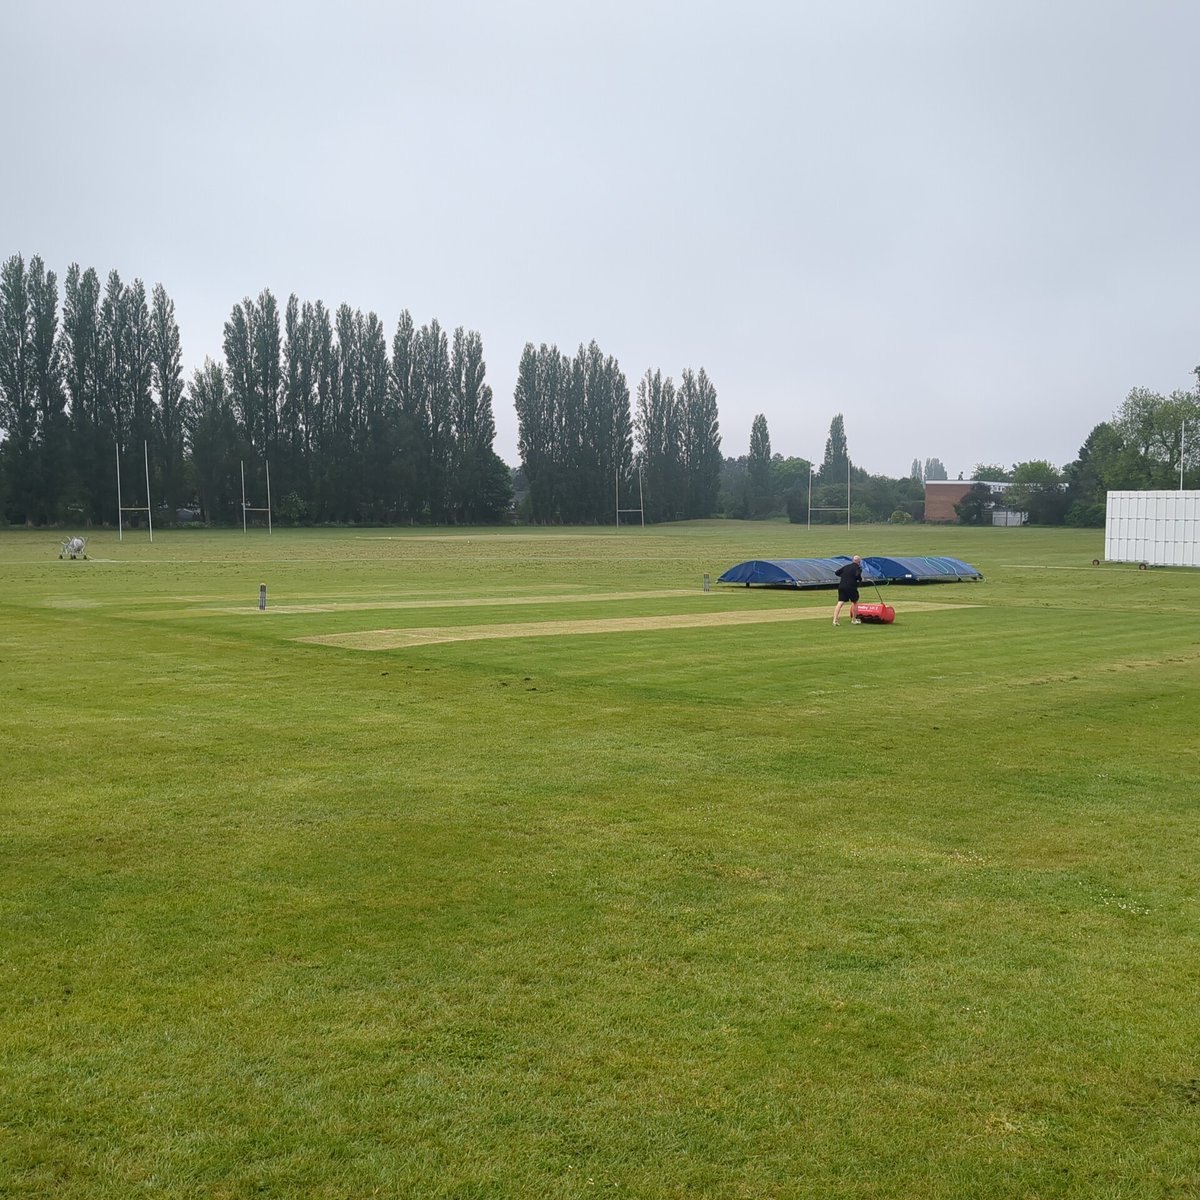 Ground slowly taking shape for a U13 Tour game Vs Altrincham Grammar School 🏏 @QMGSCRICKET @qmgs1554 @qmgs1554qma